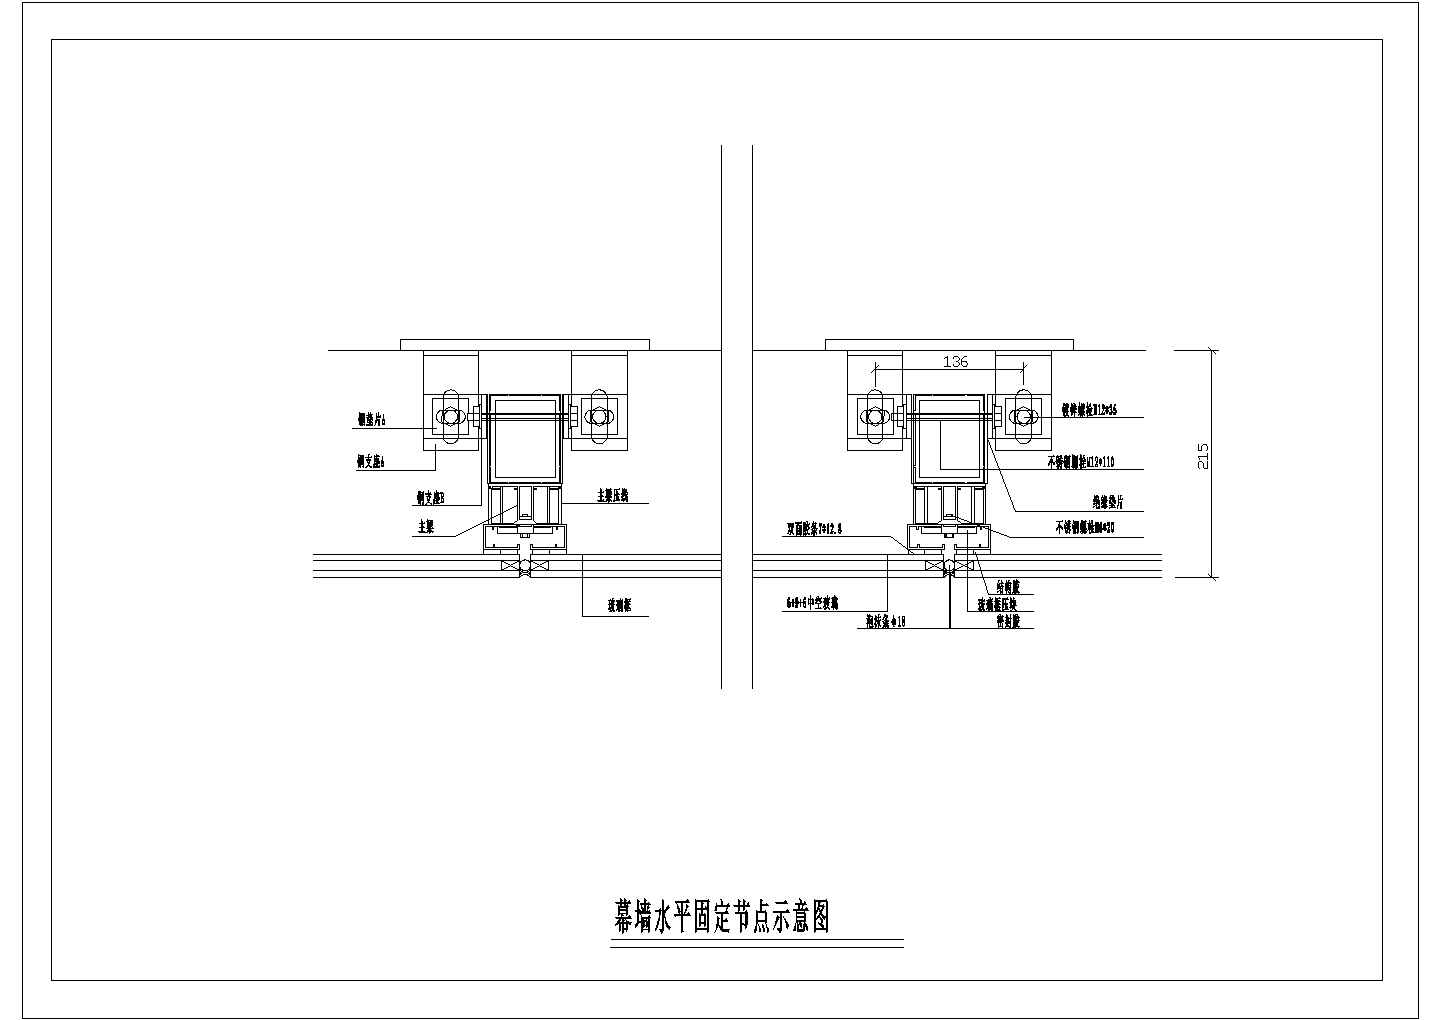 某幕墙水平固定CAD详细设计构造节点示意图